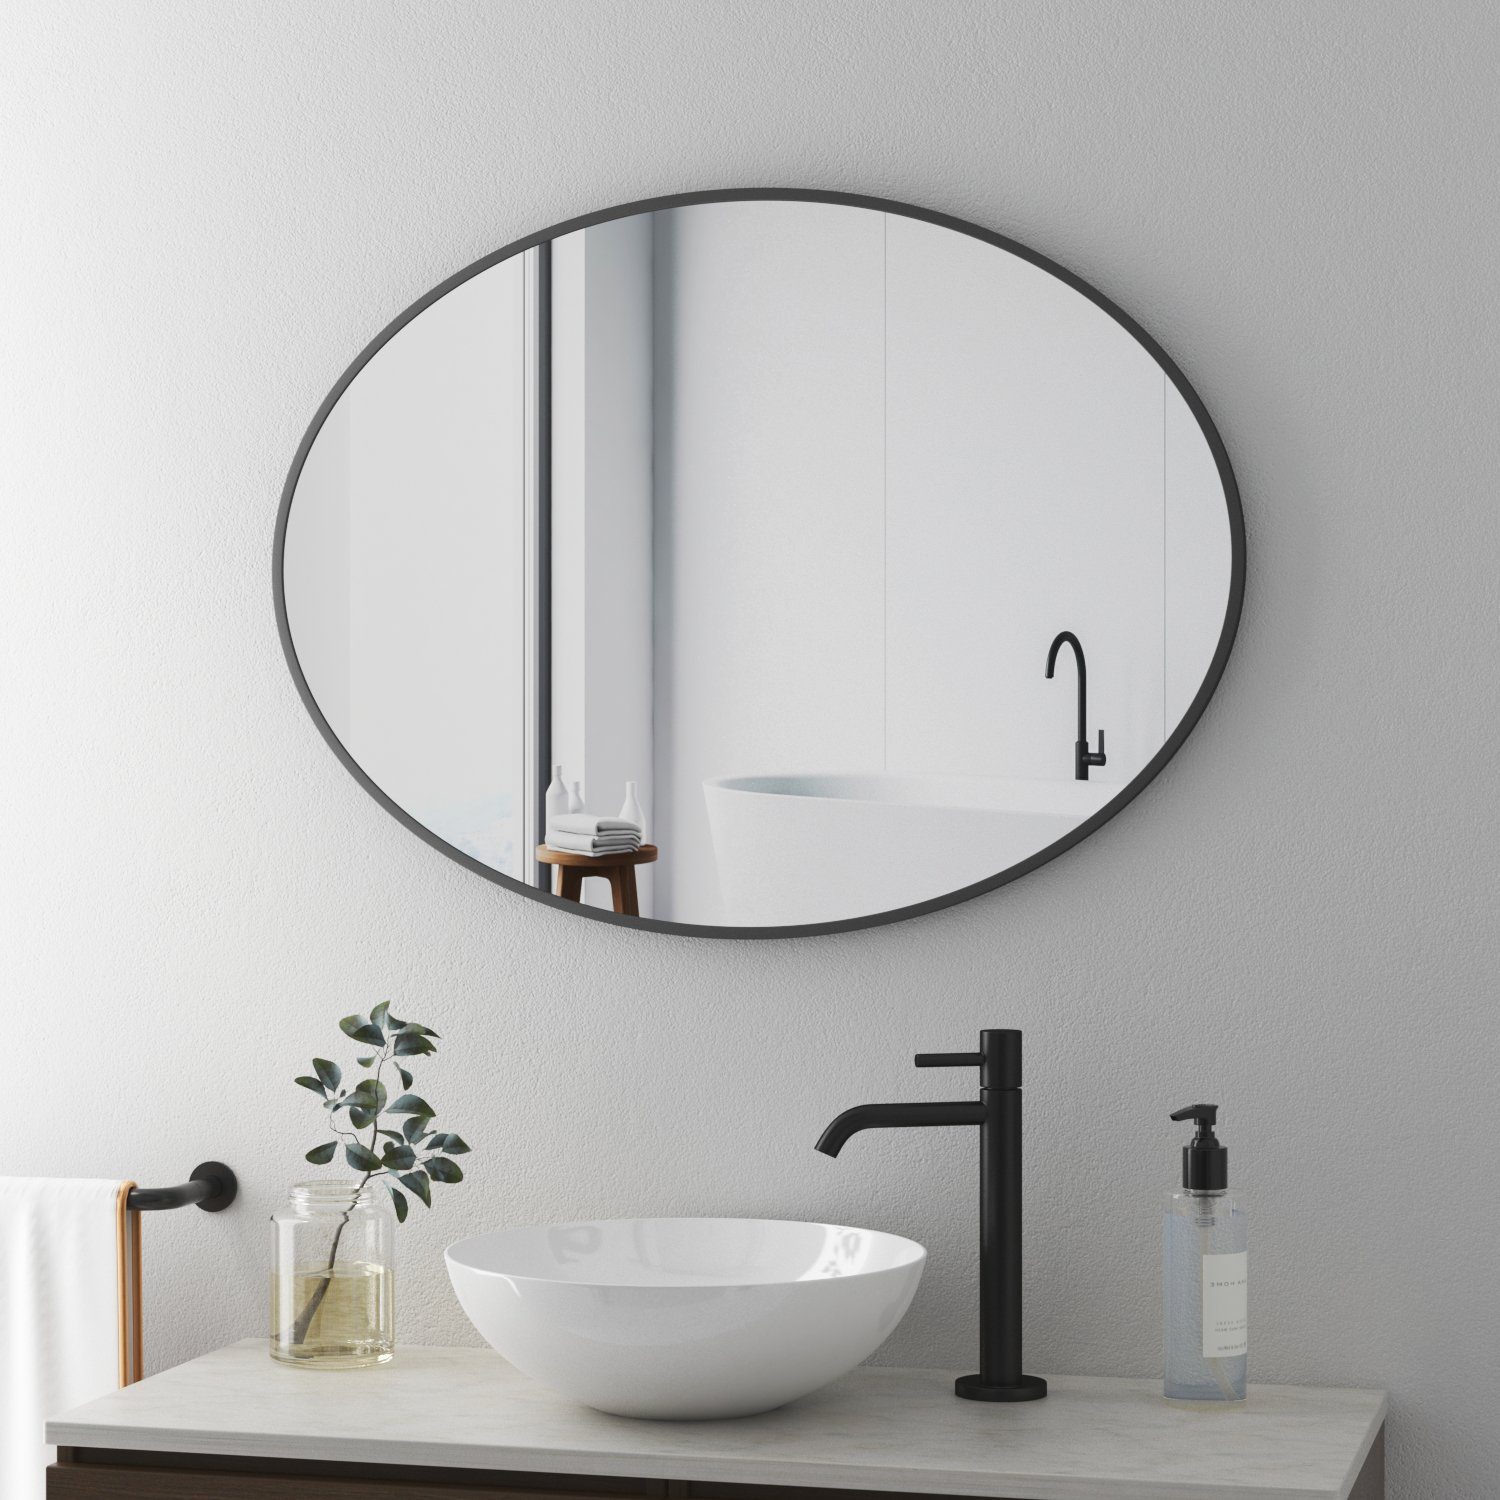 Boromal Badspiegel Wandspiegel Schwarz für Schlafzimmer Badezimmer Wohnzimmer (Spiegel Oval, 80x60, 50x70, 5mm Kupfer- und bleifreier Spiegel), 2 Installationsmethoden